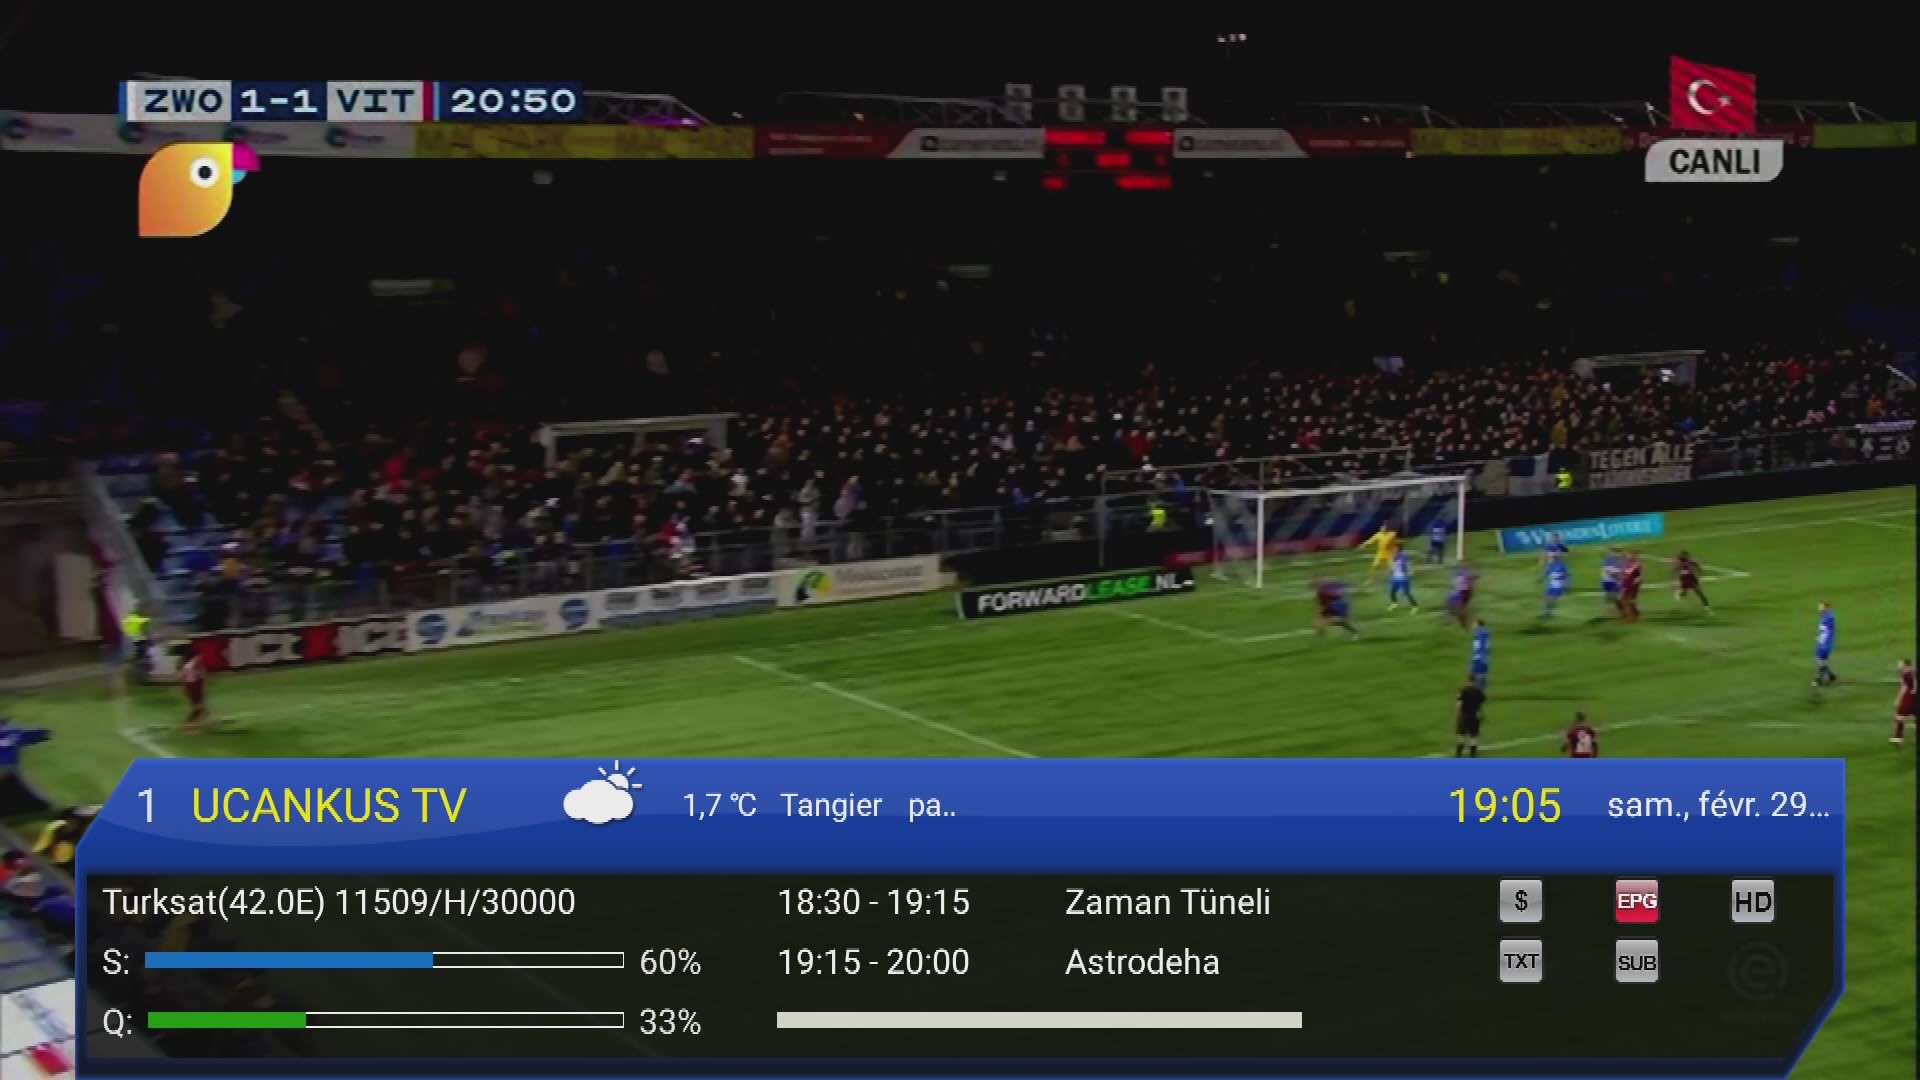 الدوري الهولندي بالمجان على قناة UCANKUS TV التركية P_1520u2jcz0